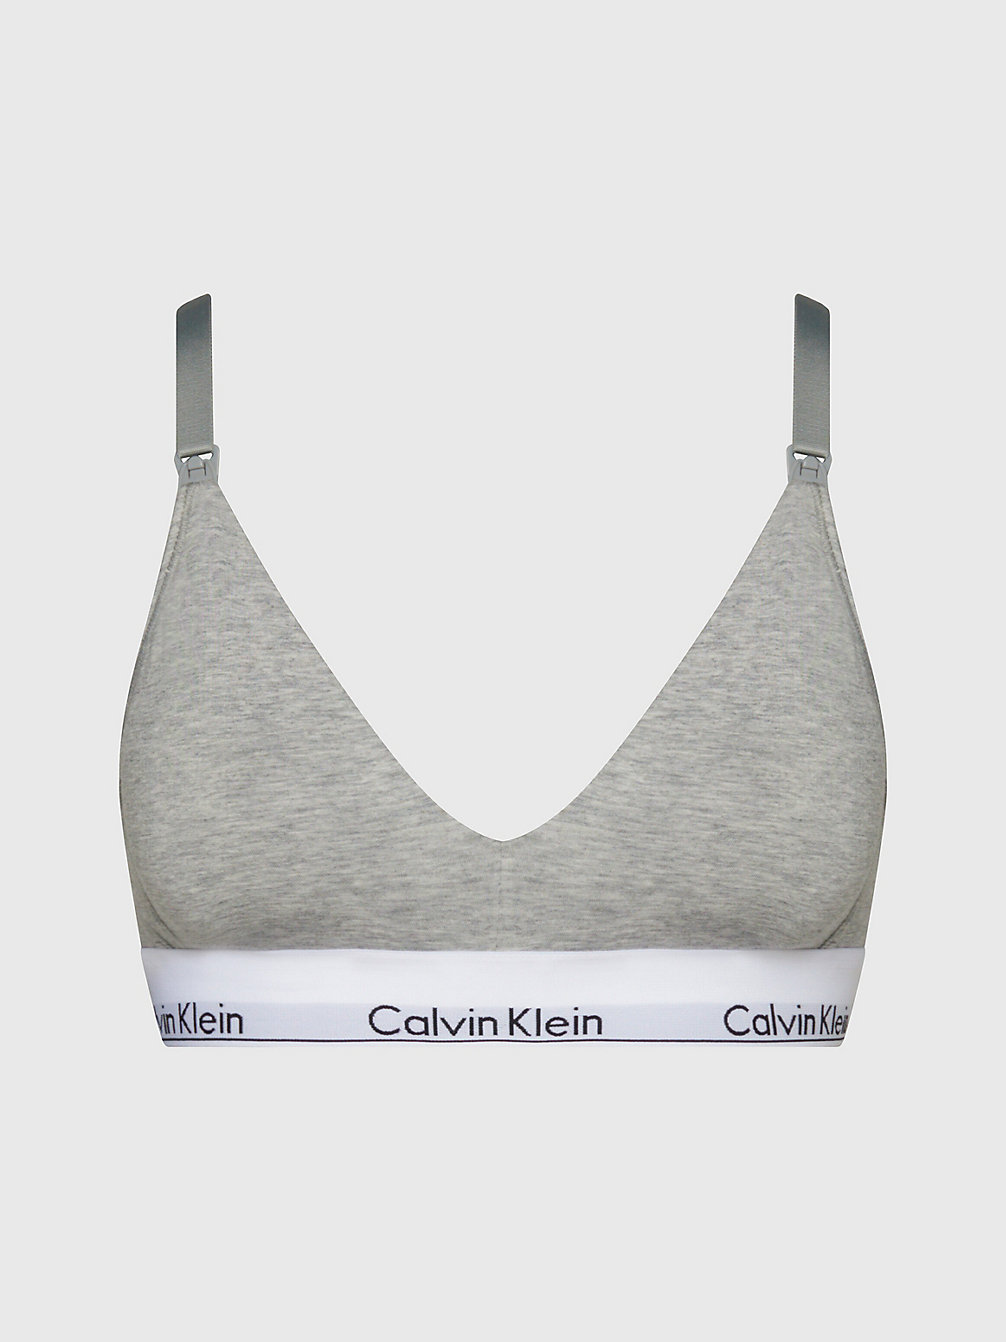 GREY HEATHER > Schwangerschafts- Und Still-Bh - Modern Cotton > undefined Damen - Calvin Klein